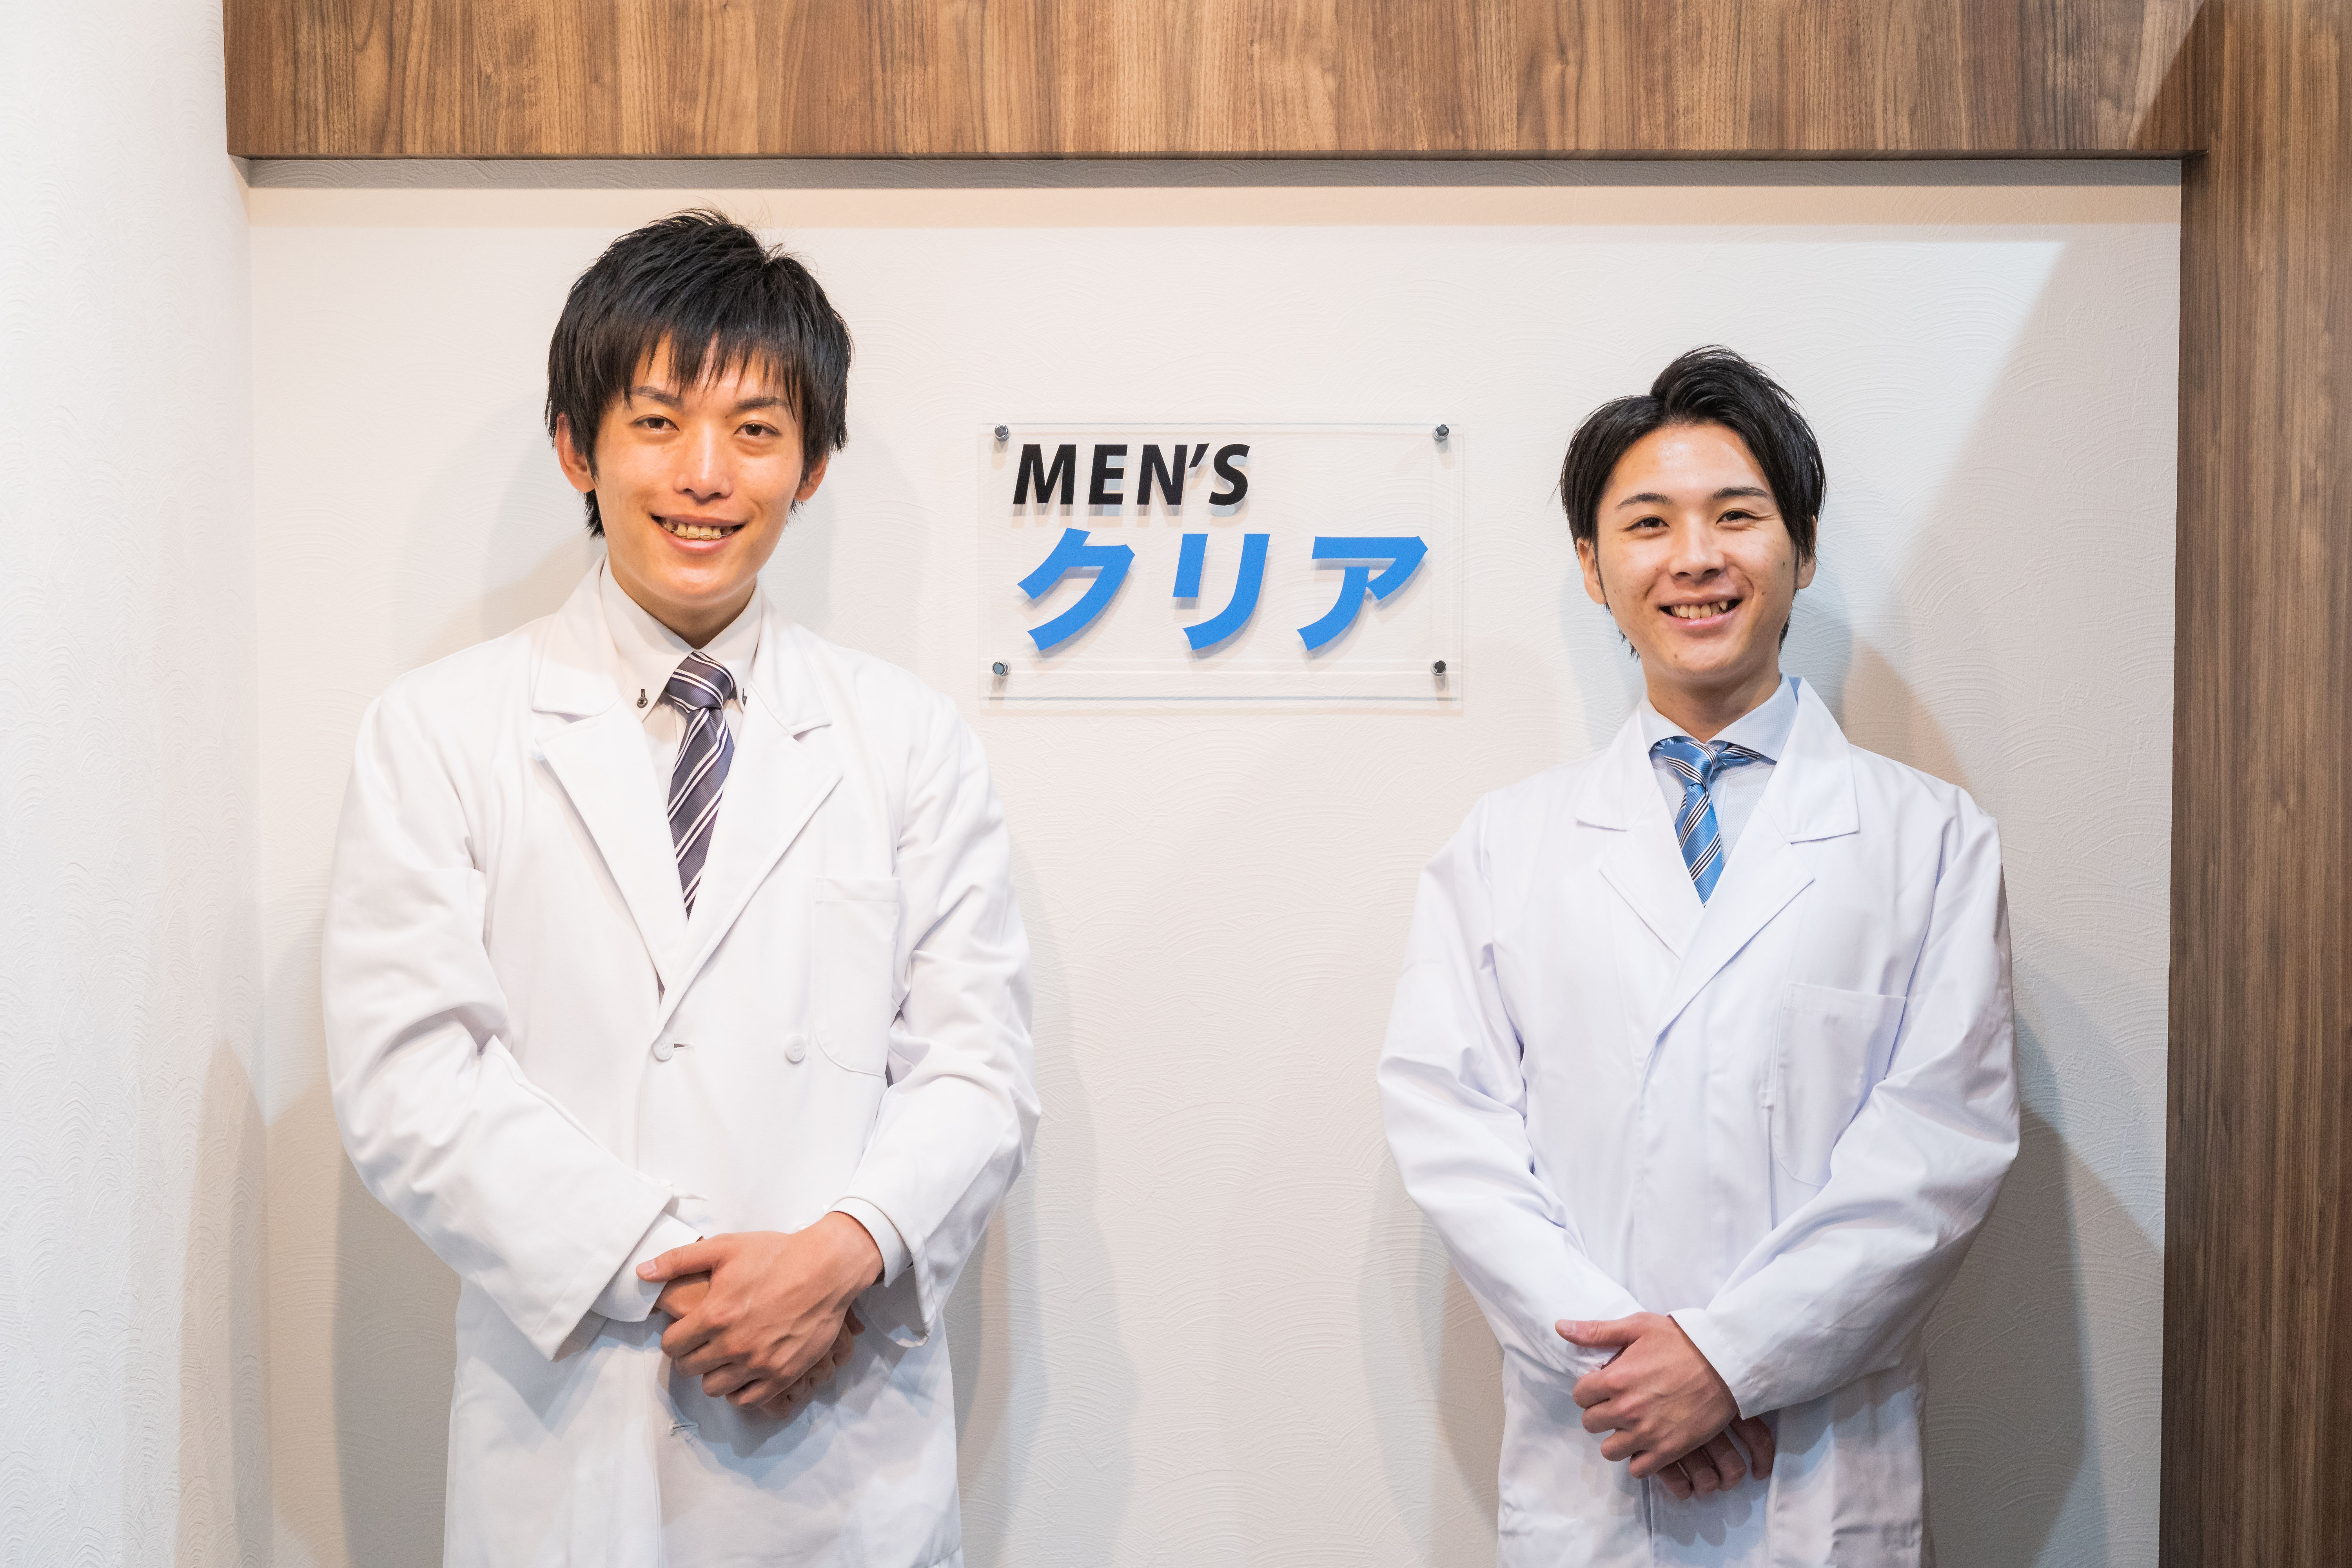 メンズ脱毛専門店 メンズクリア が宮城仙台店をオープンします 株式会社クリアのプレスリリース